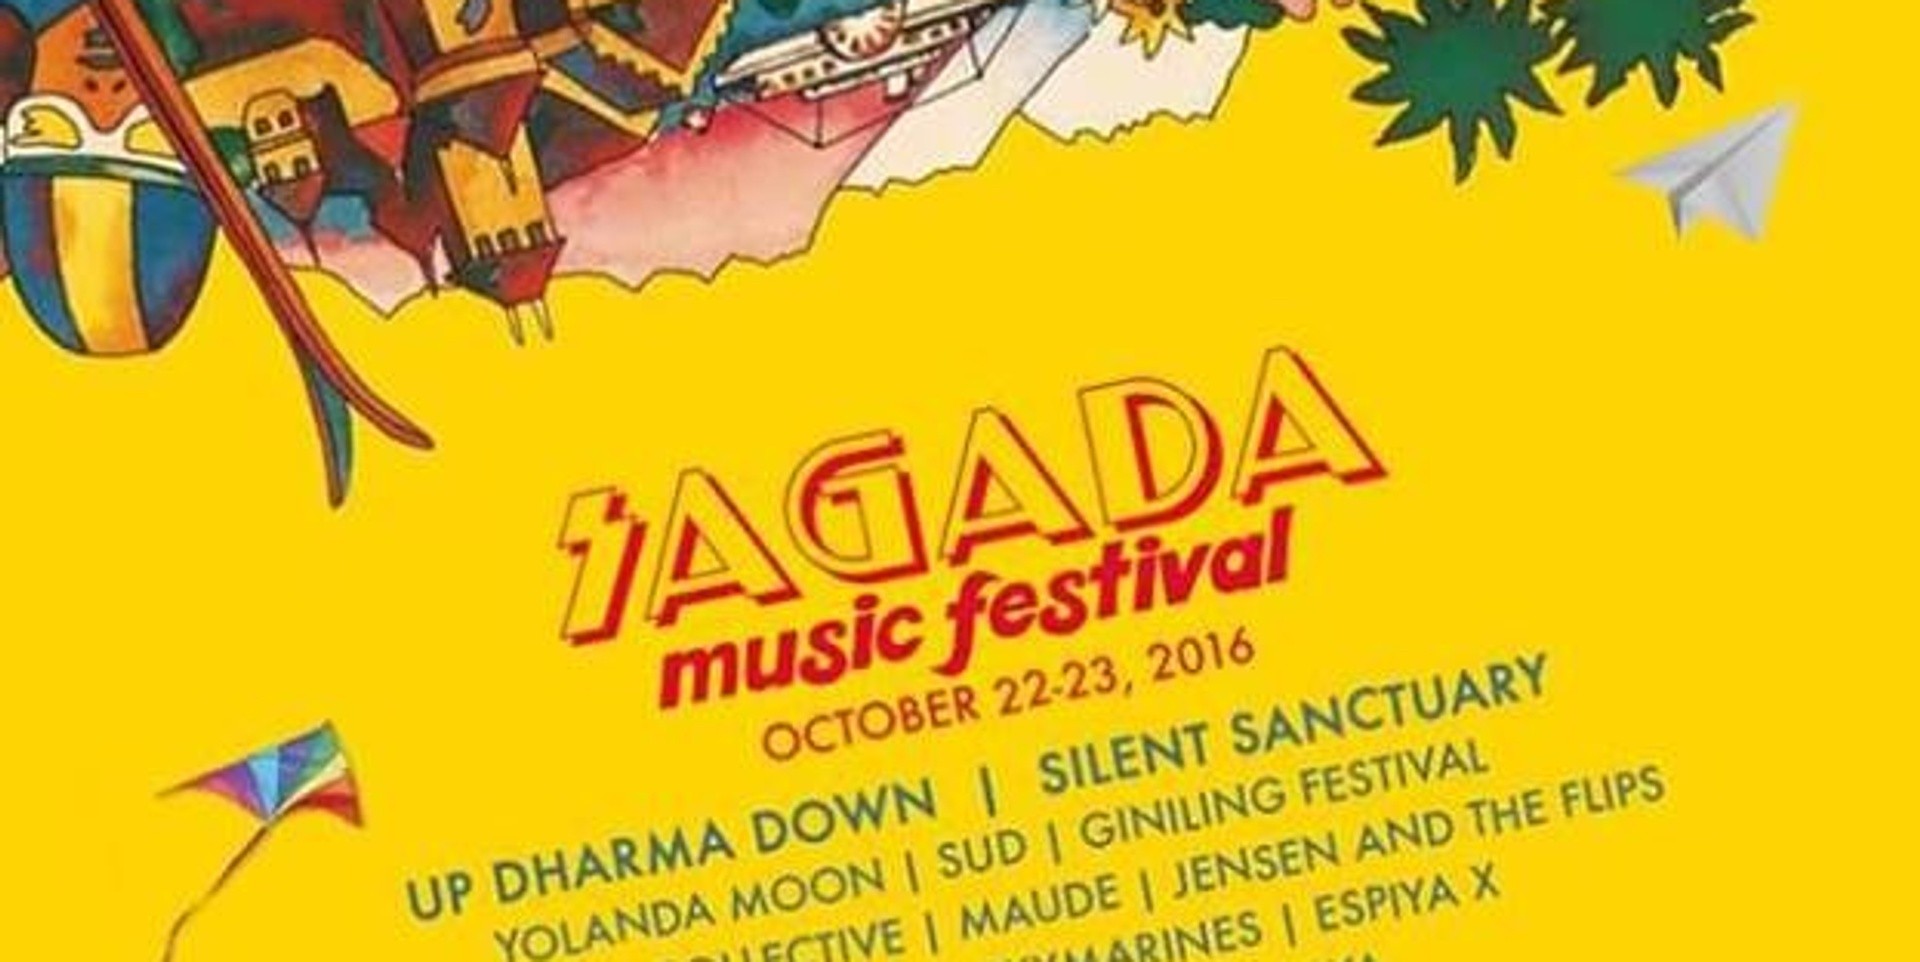 Local artists alert music fans of 'Sagada Music Festival' scam